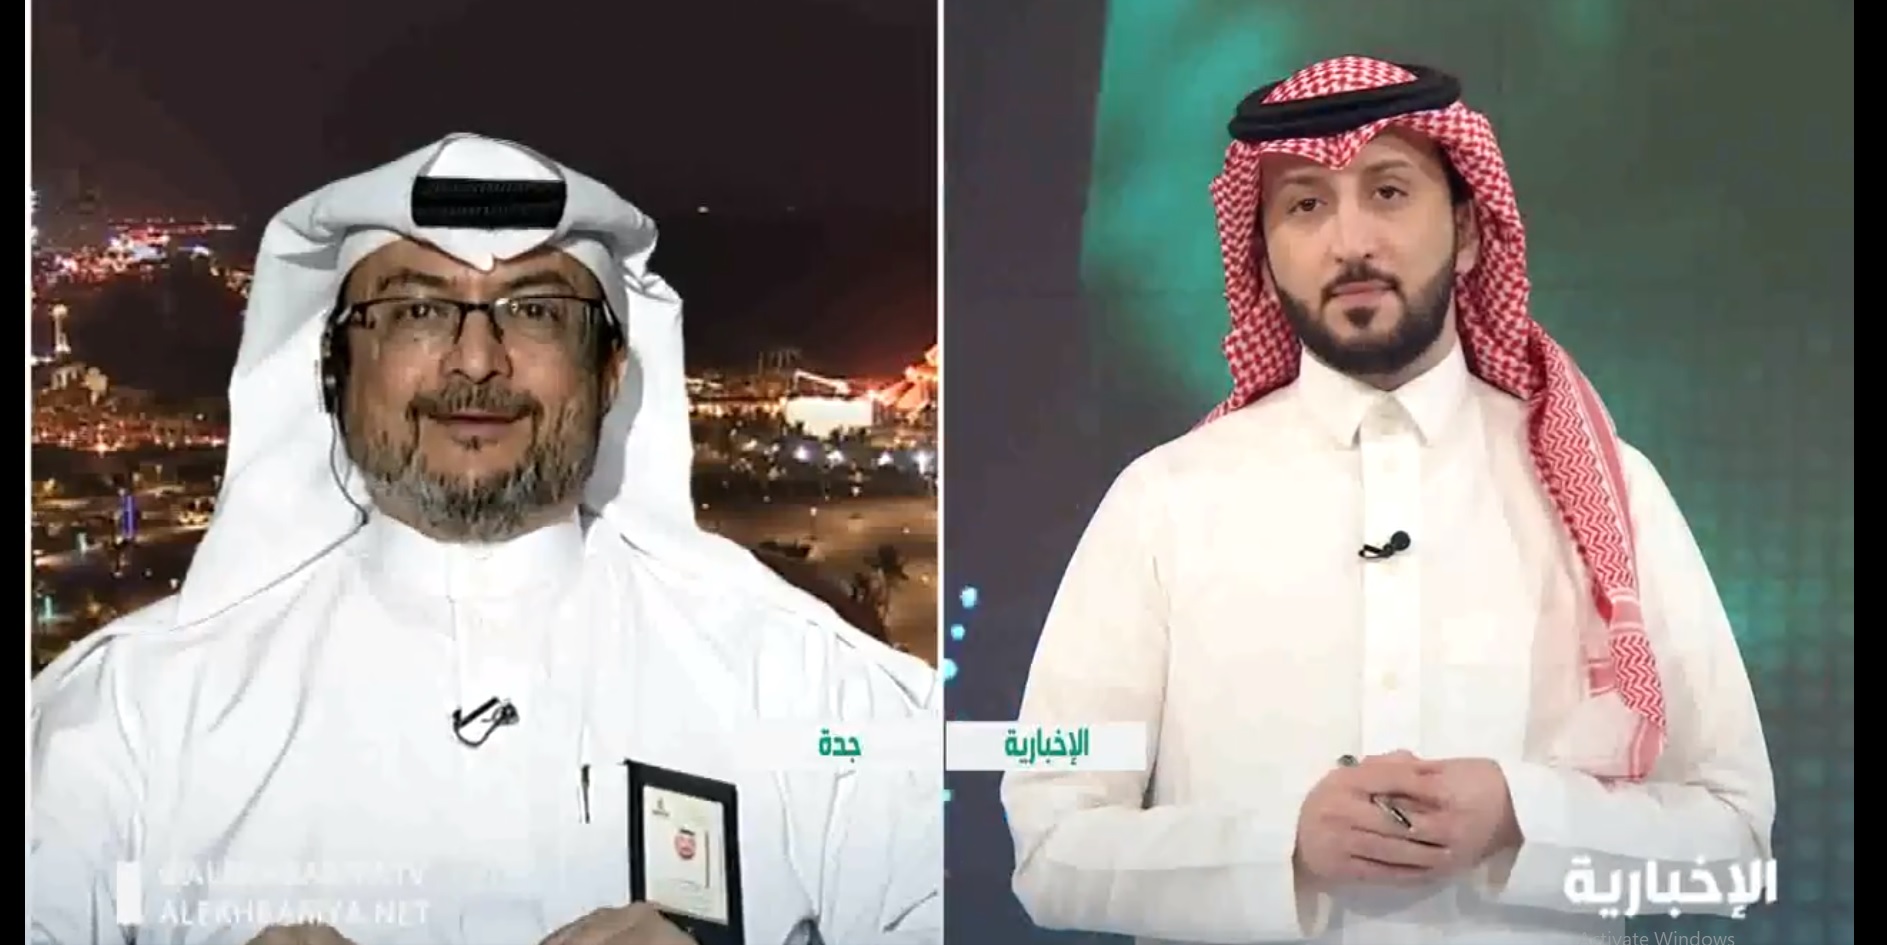 فيديو.. براءة اختراع سعودية يمكنها إضاءة الحرم المكي بطاقة المشي